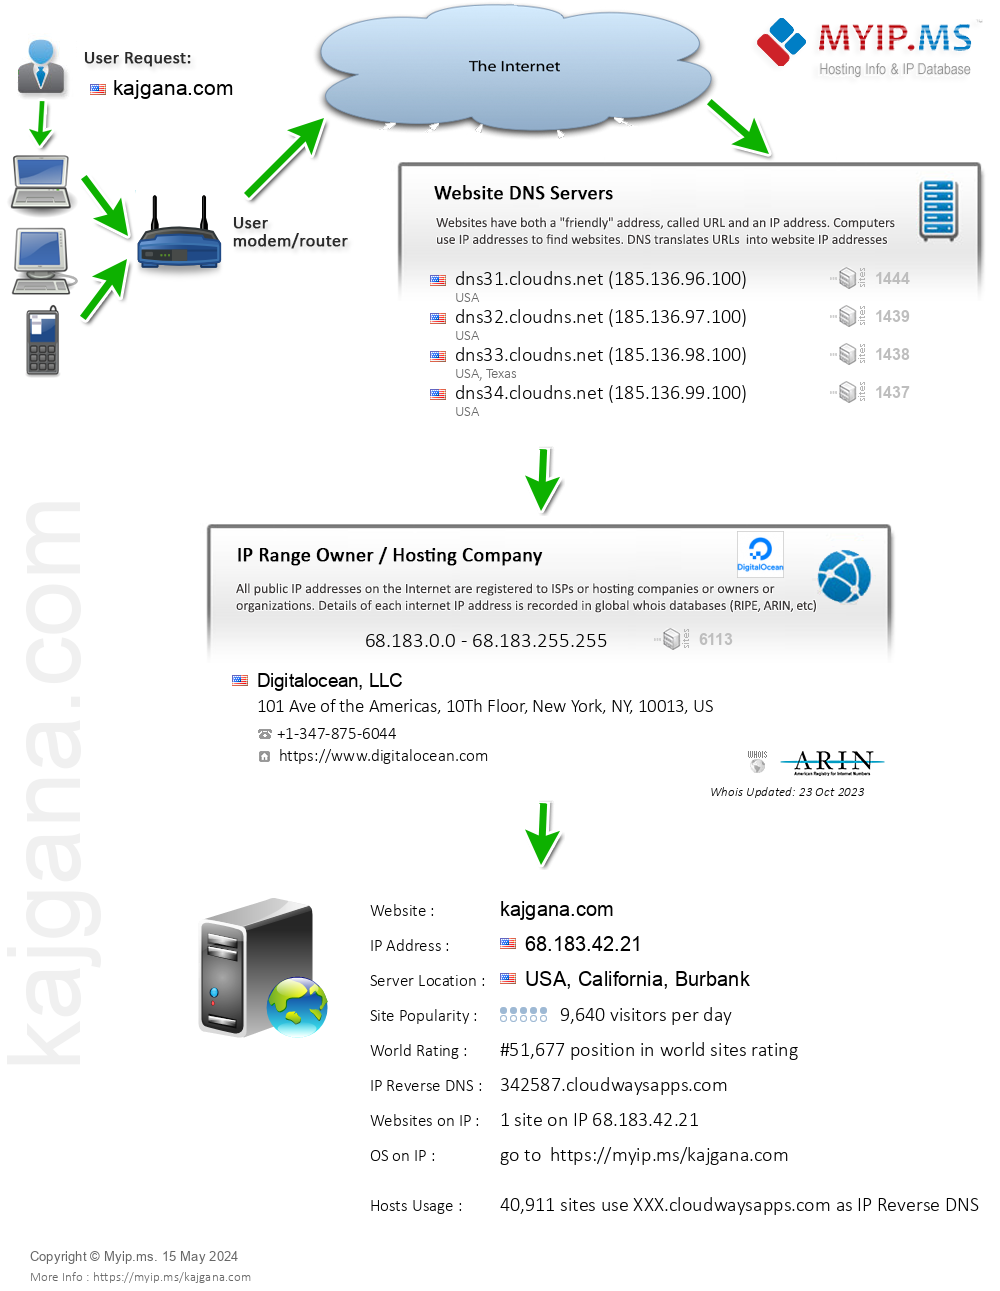 Kajgana.com - Website Hosting Visual IP Diagram